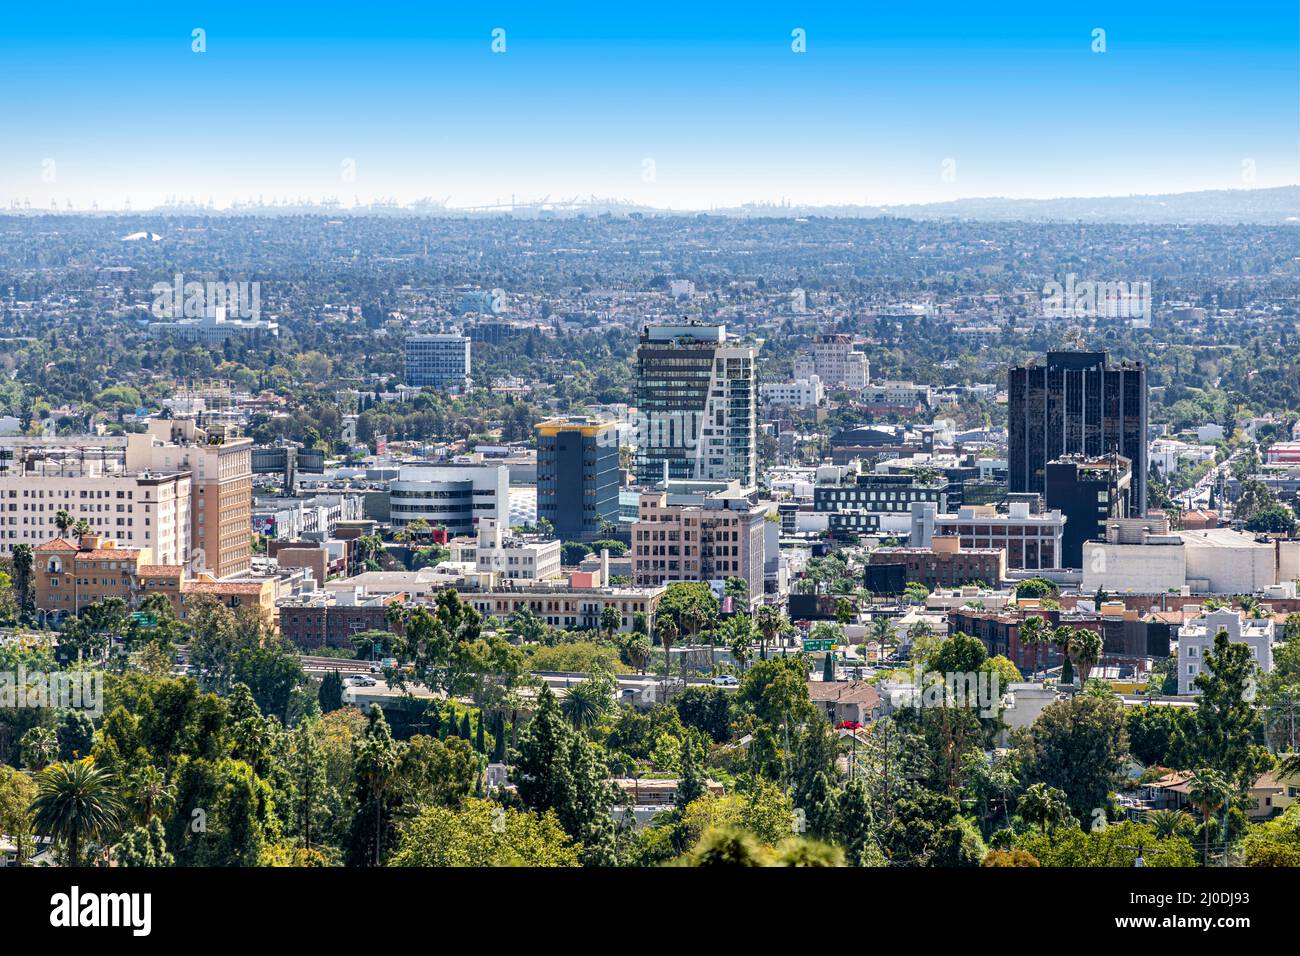 Vista del centro de la ciudad de Santa Mónica desde la presa del embalse de Hollywood durante un día hermoso y luminoso. Foto de stock